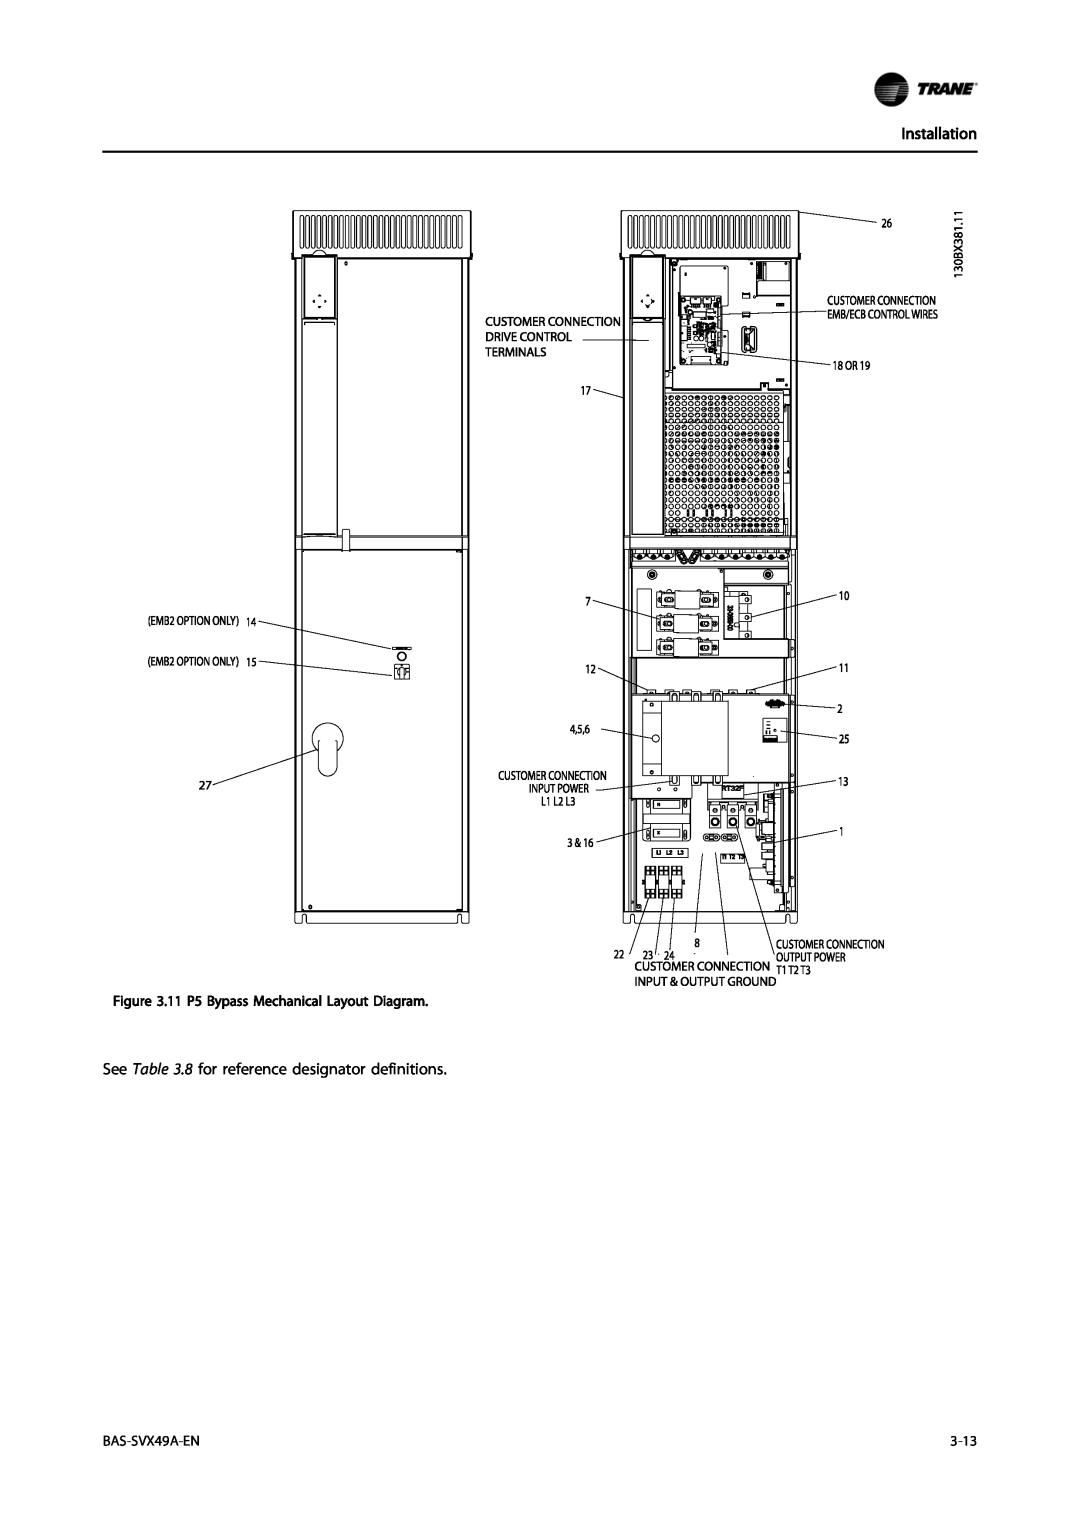 Trane Vertical Bypass/Non Bypass Panel, TR200 Installation, 11 P5 Bypass Mechanical Layout Diagram, BAS-SVX49A-EN, 3-13 